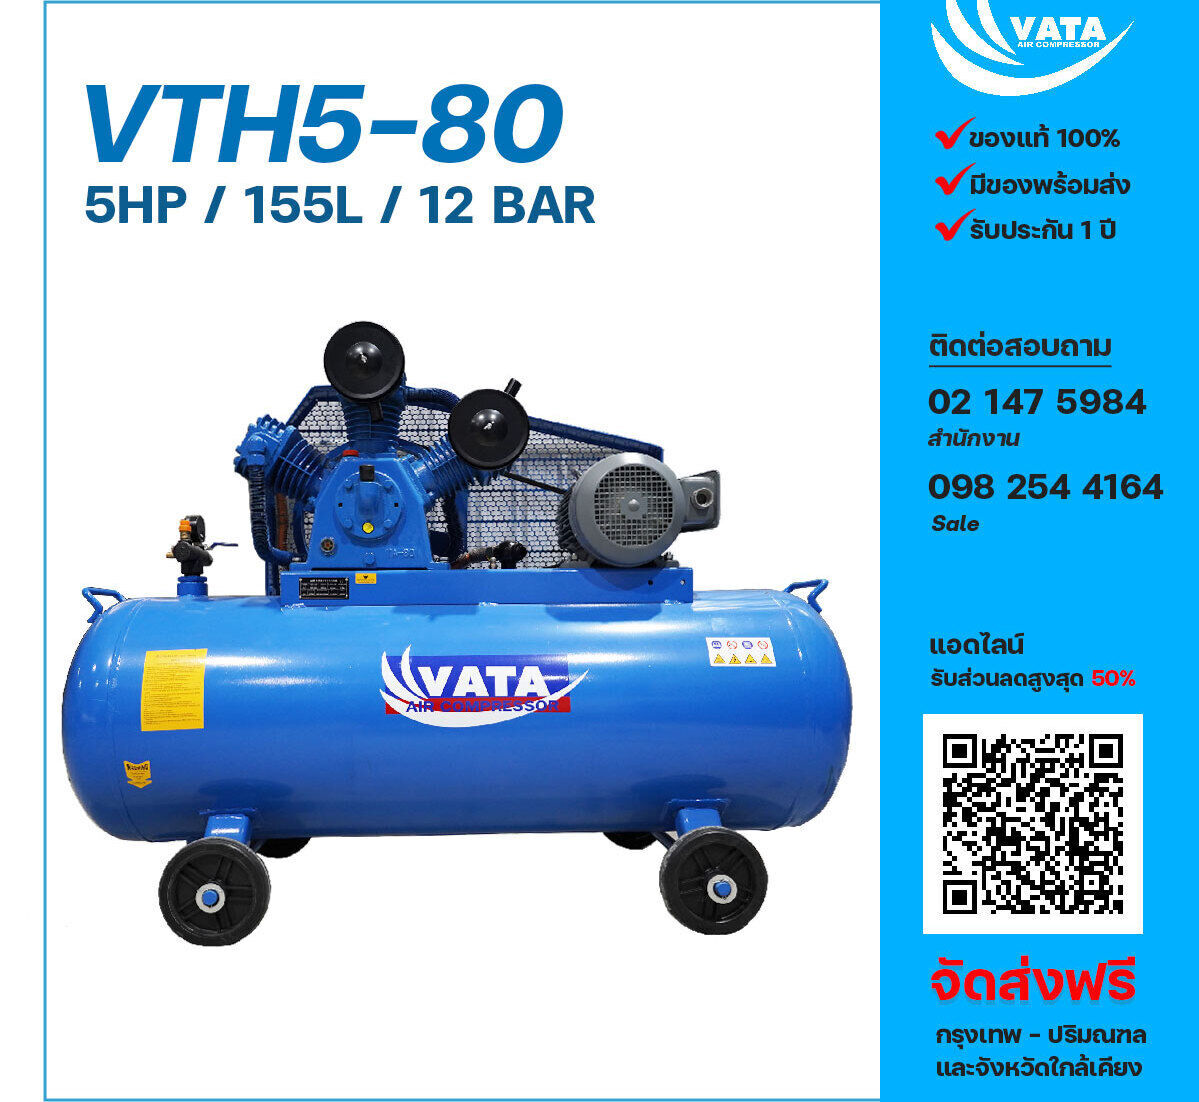 ปั๊มลมวาตะแรงดันสูง VATA Two-Stage VTH5-80 380V ปั๊มลมลูกสูบ ขนาด 3 สูบ 5 แรงม้า 155 ลิตร VATA พร้อมมอเตอร์ ไฟ 380V ส่งฟรี กรุงเทพฯ-ปริมณฑล รับประกัน 1 ปี